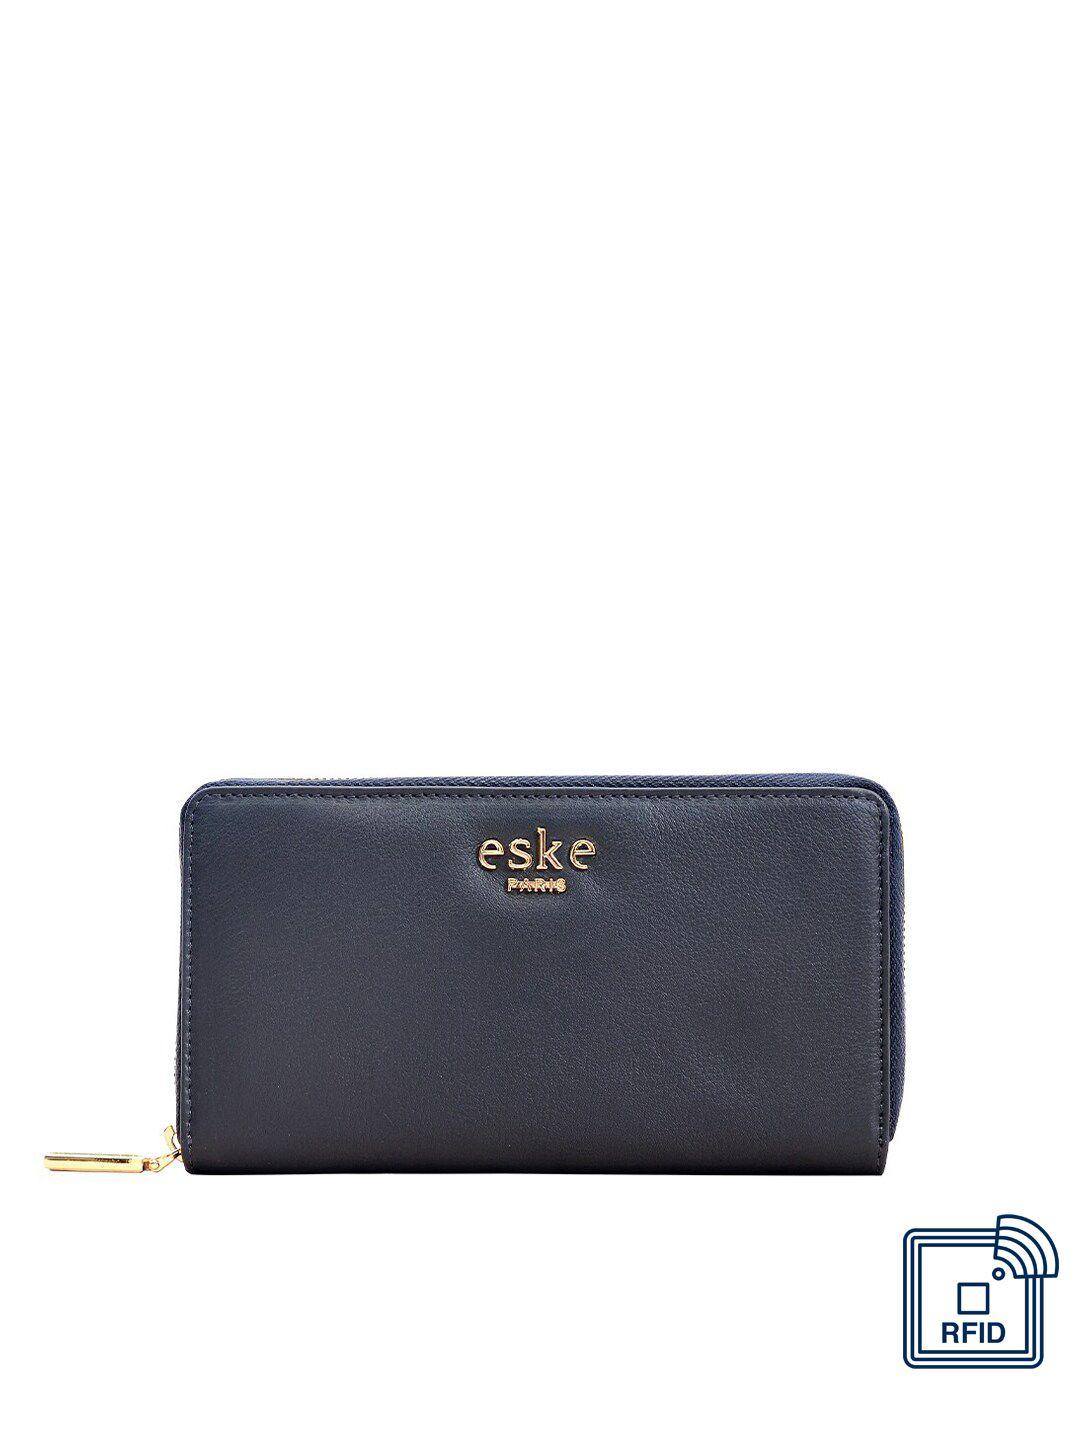 eske women navy blue textured leather zip around wallet